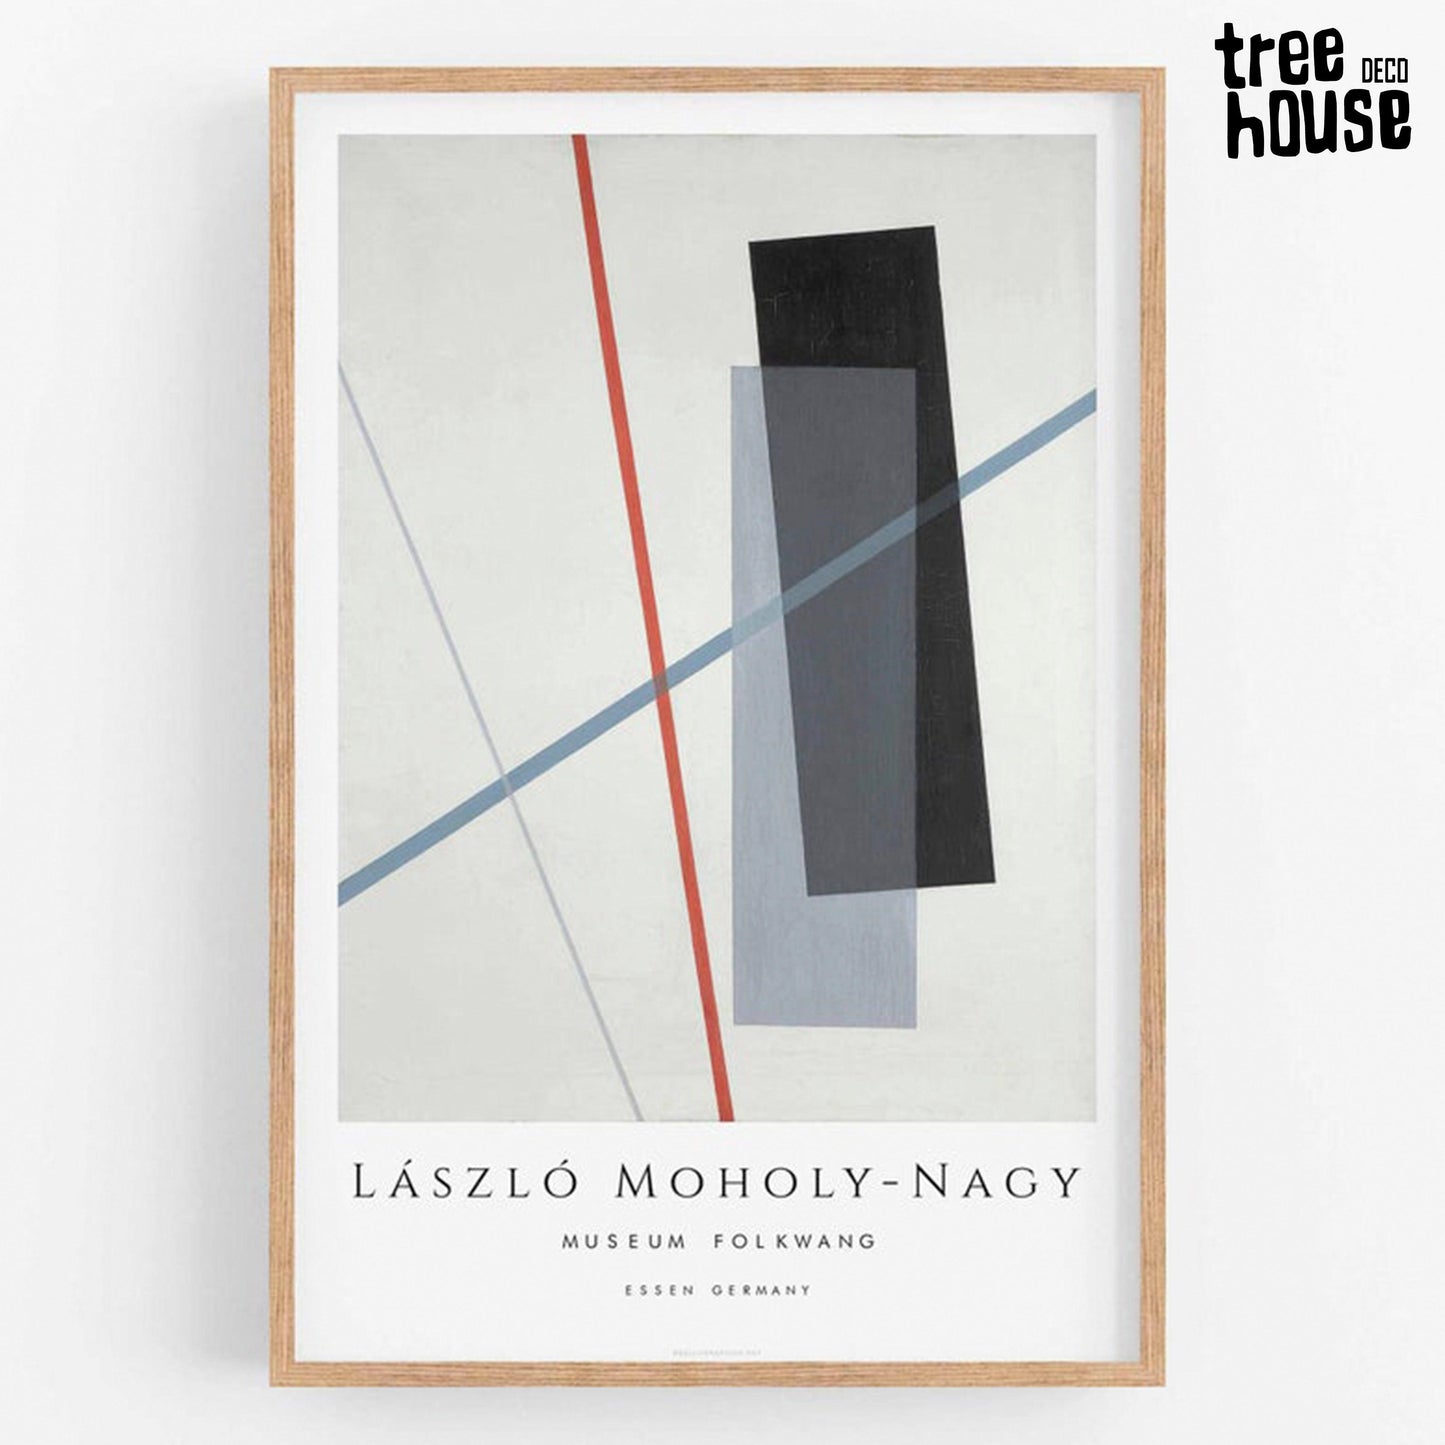 Cuadro Decorativo de László Moholy-Nagy